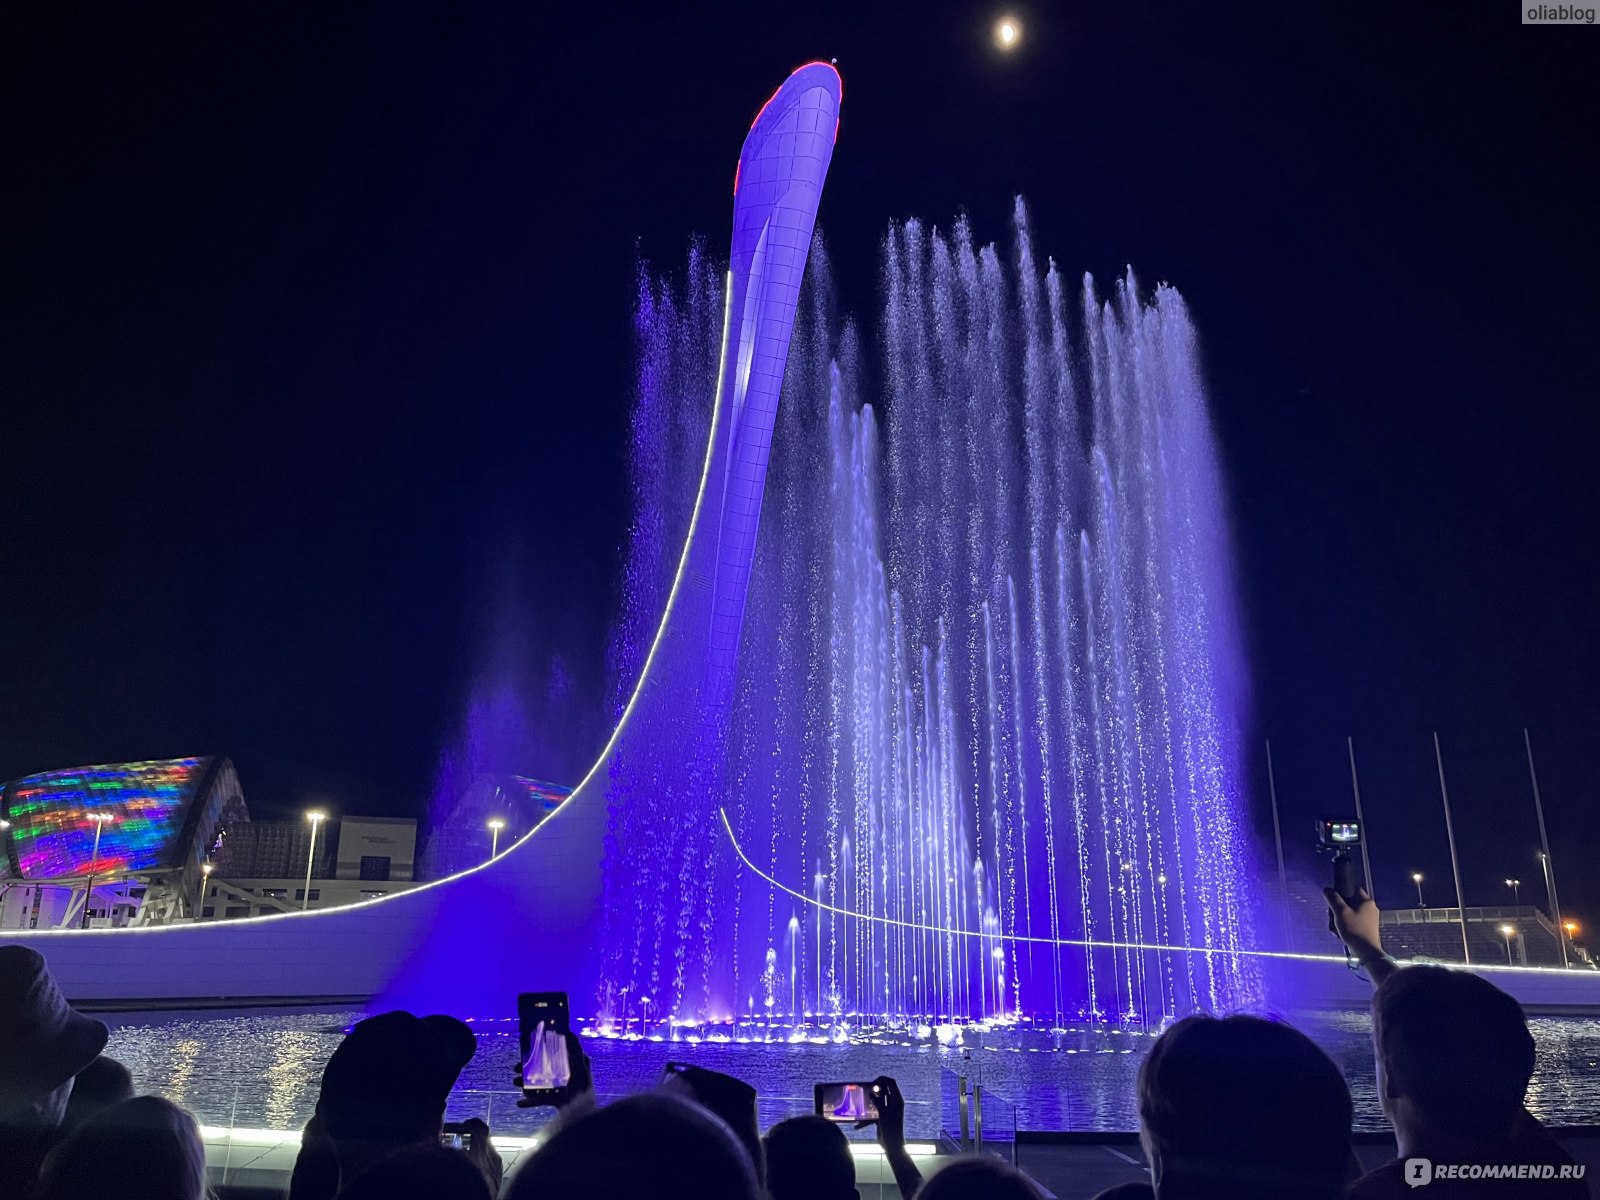 Олимпийский парк работа поющих фонтанов. Поющие фонтаны Сочи Олимпийский парк. Фонтан в Олимпийском парке Адлер. Поющие фонтаны в Сочи в Олимпийском. Сочи парк фонтан.